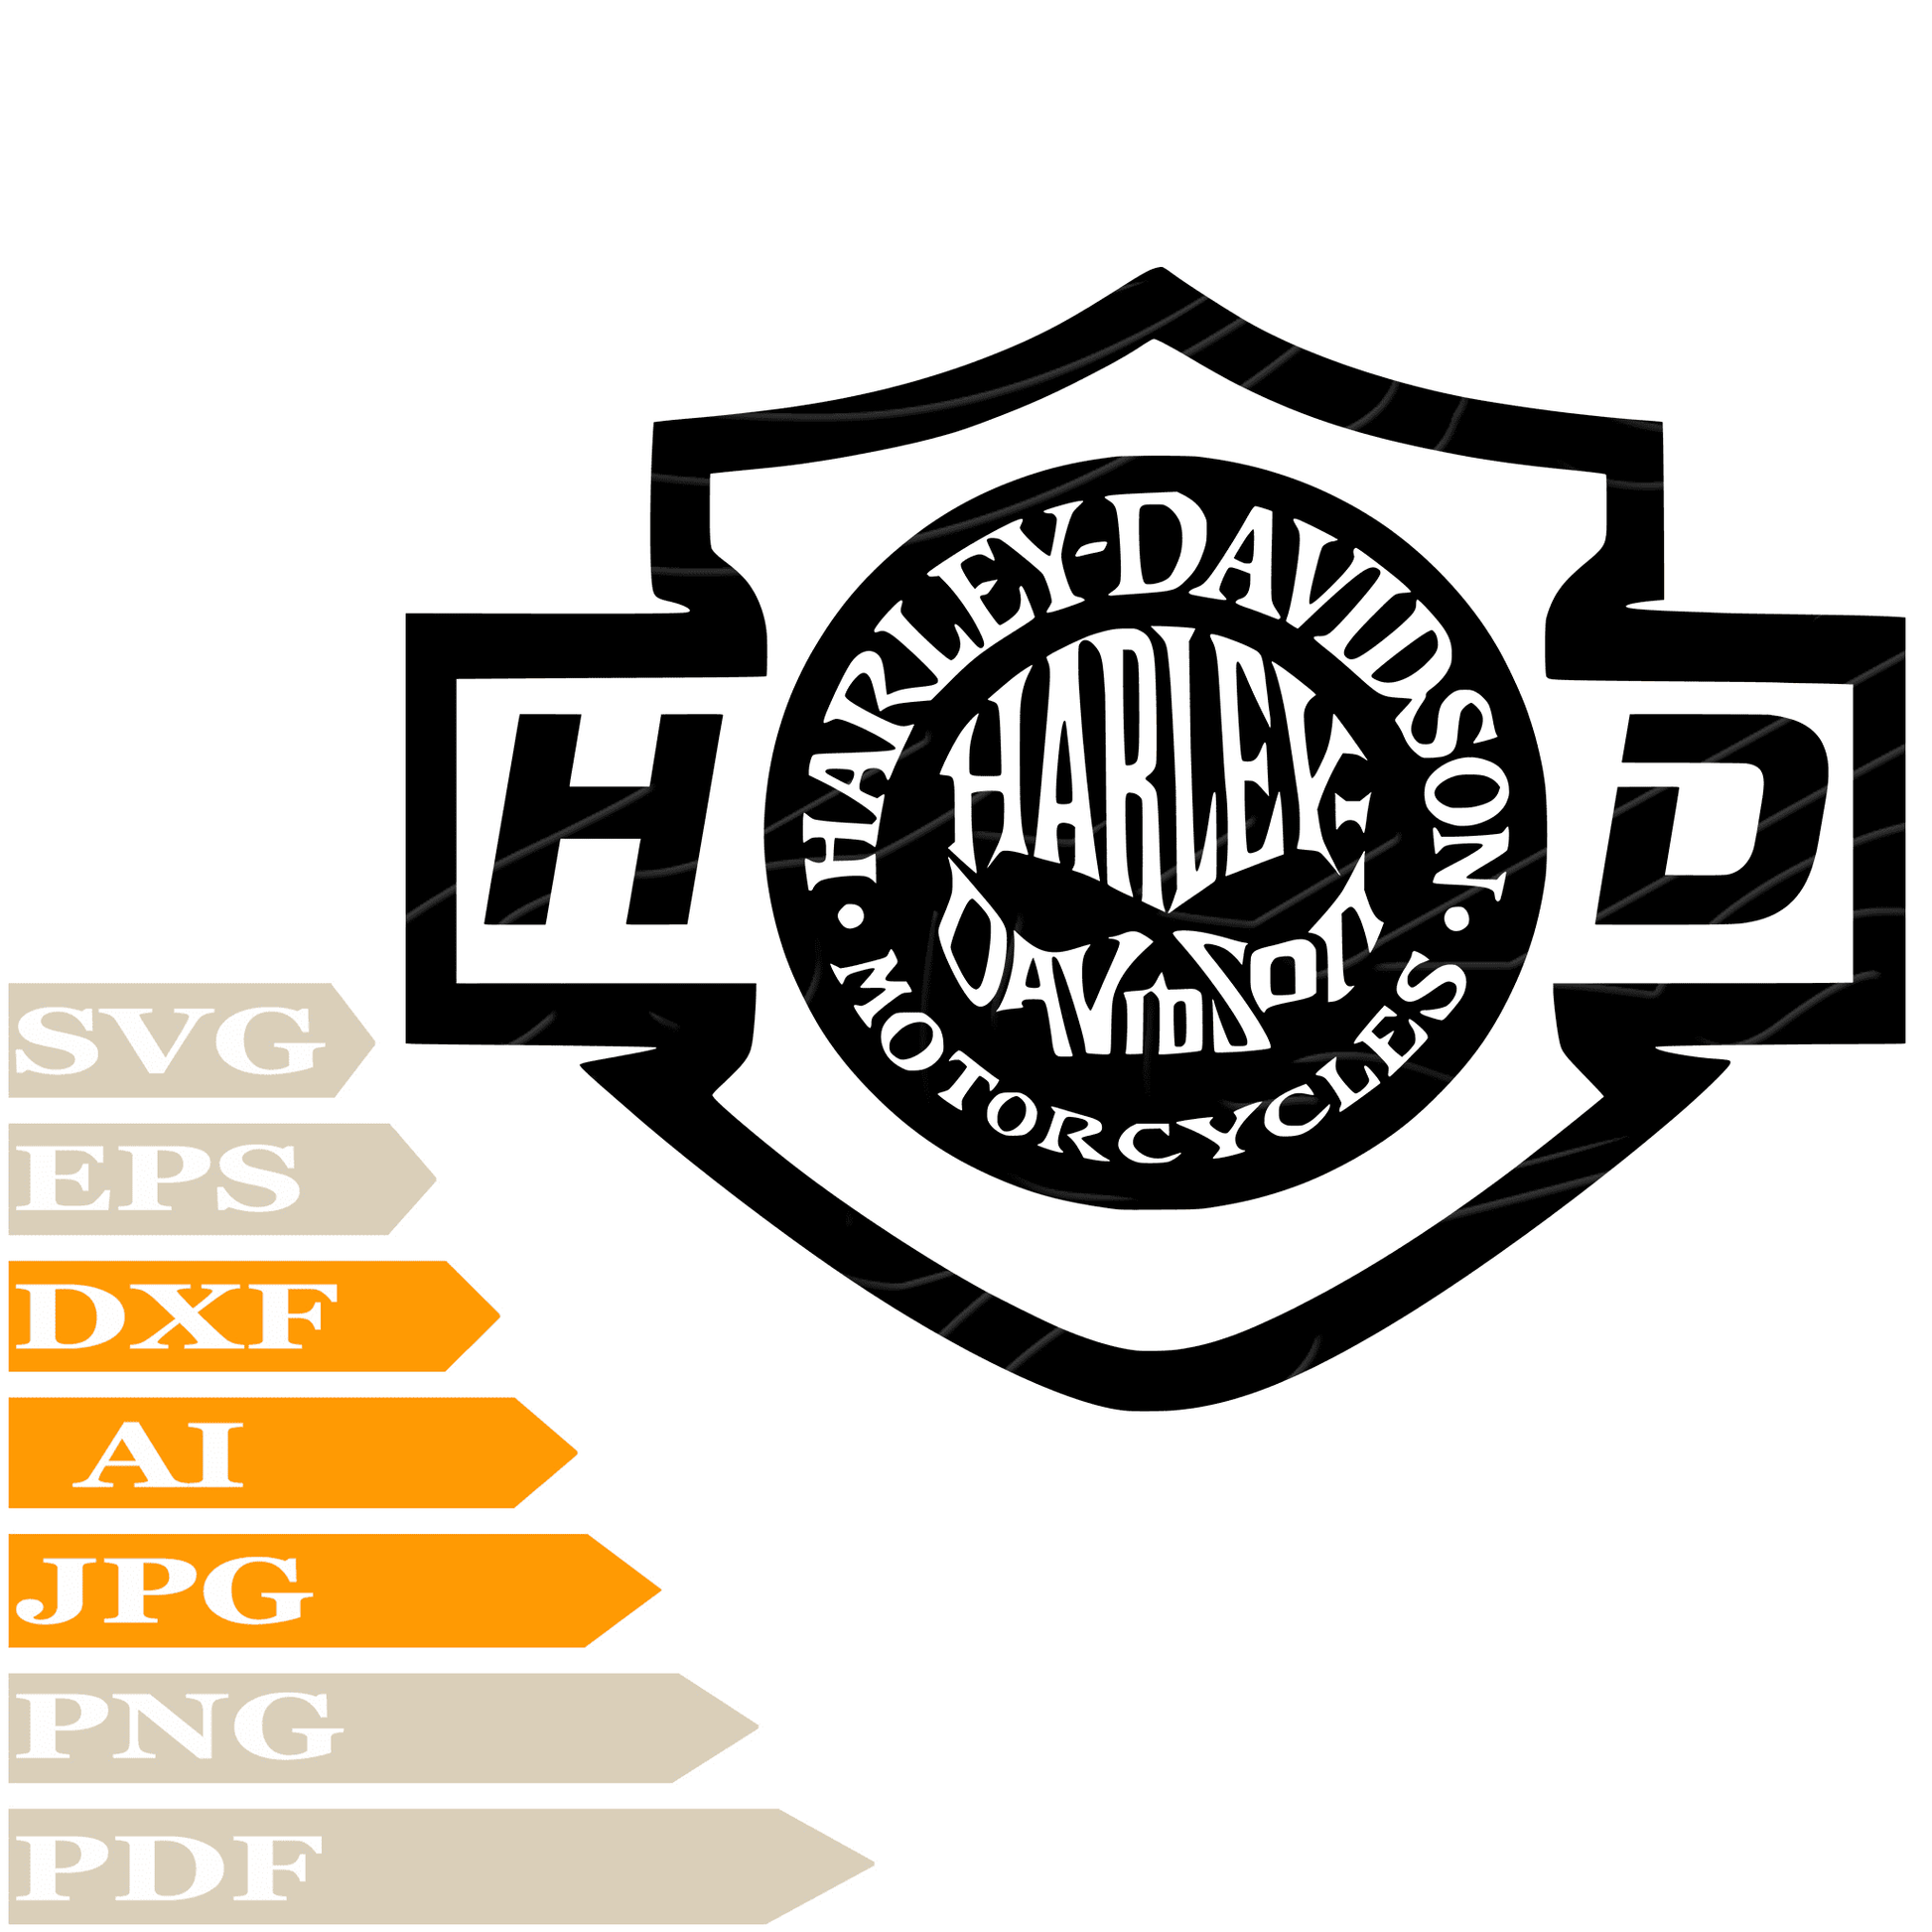 Harley-Davidson SVG File, Skull Harley-Davidson Logo SVG Design, Harley Davidson SVG, Skull Harley Davidson Vector Digital, Skull Harley PNG, For Cricut, Clipart, Cut File, Print, Instant Download, T-Shirt, Silhouette